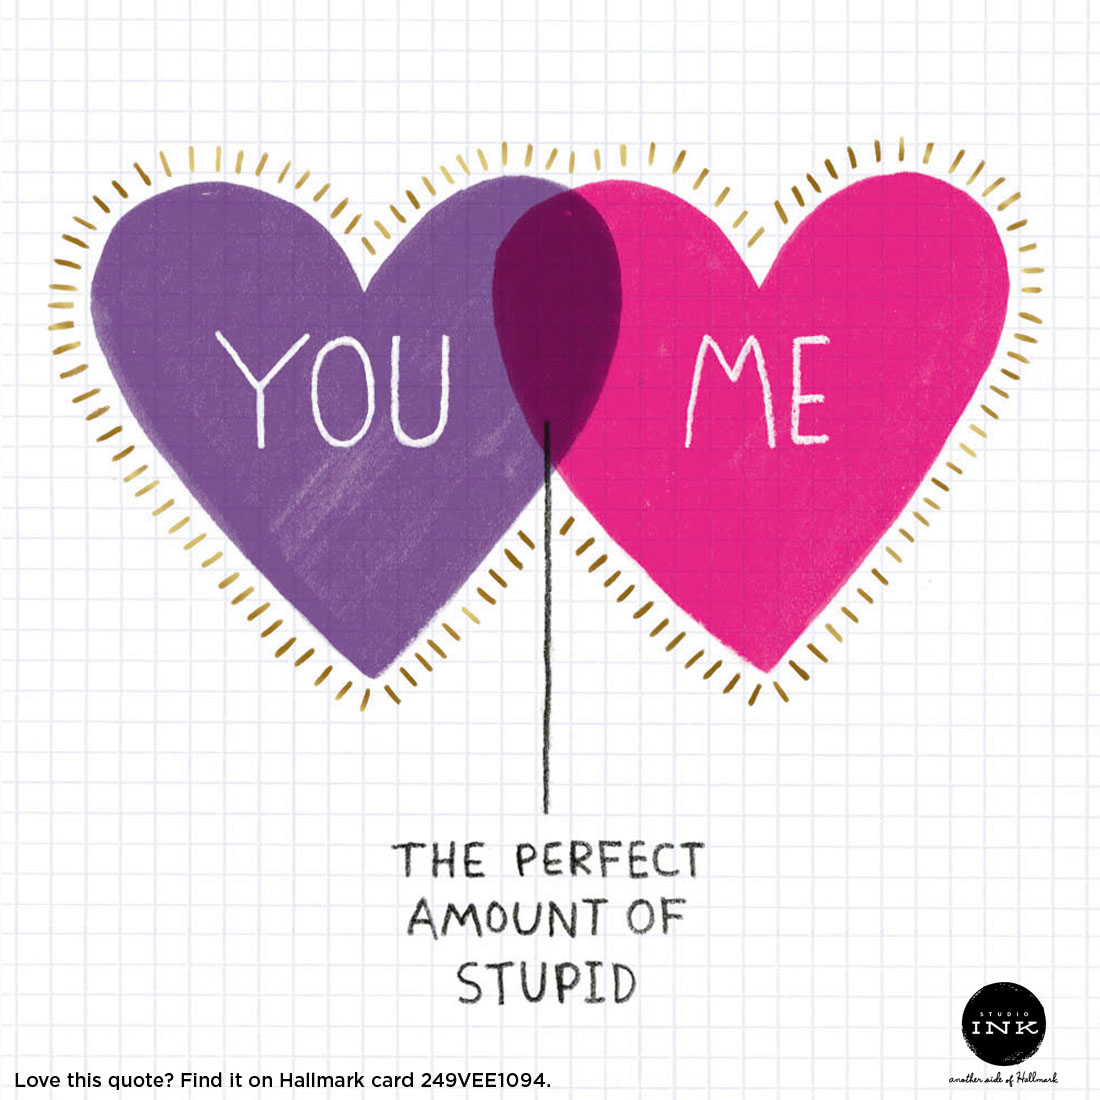 Valentine's Day Quotes: You + Me = The Perfect Amount of Stupid #MyHallmark #MyHallmarkIdeas